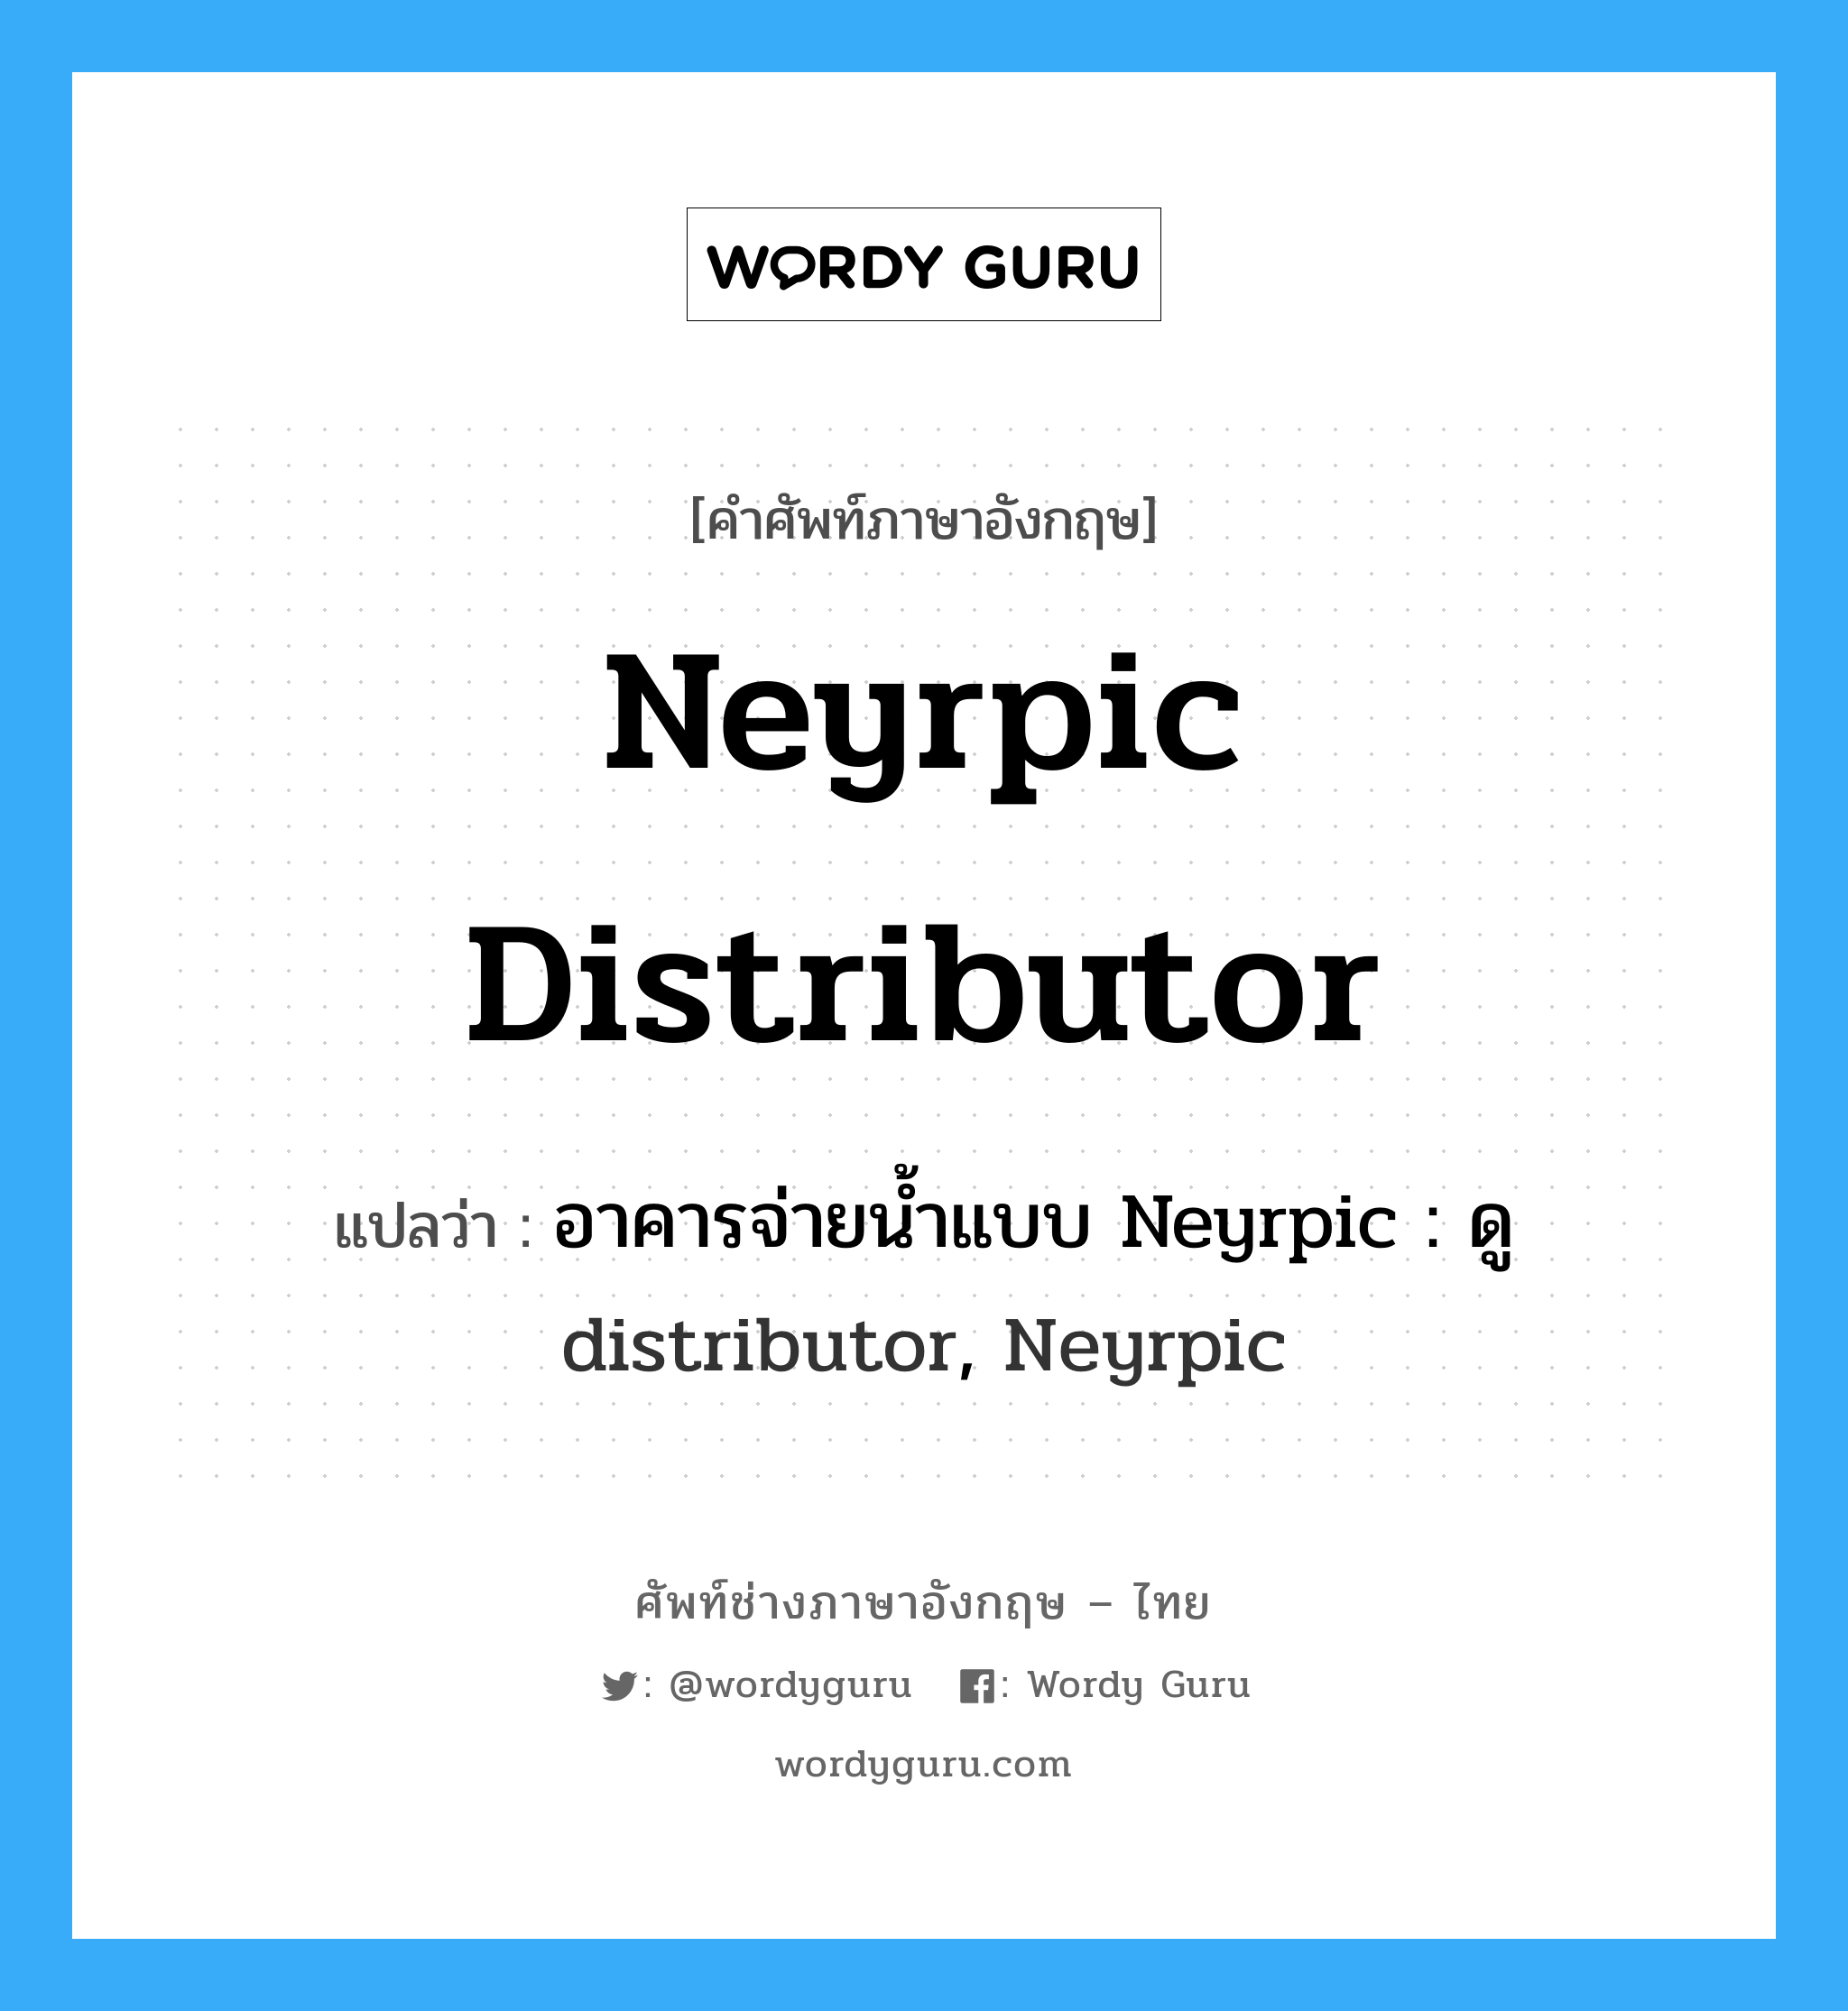 อาคารจ่ายน้ำแบบ Neyrpic : ดู distributor, Neyrpic ภาษาอังกฤษ?, คำศัพท์ช่างภาษาอังกฤษ - ไทย อาคารจ่ายน้ำแบบ Neyrpic : ดู distributor, Neyrpic คำศัพท์ภาษาอังกฤษ อาคารจ่ายน้ำแบบ Neyrpic : ดู distributor, Neyrpic แปลว่า Neyrpic distributor